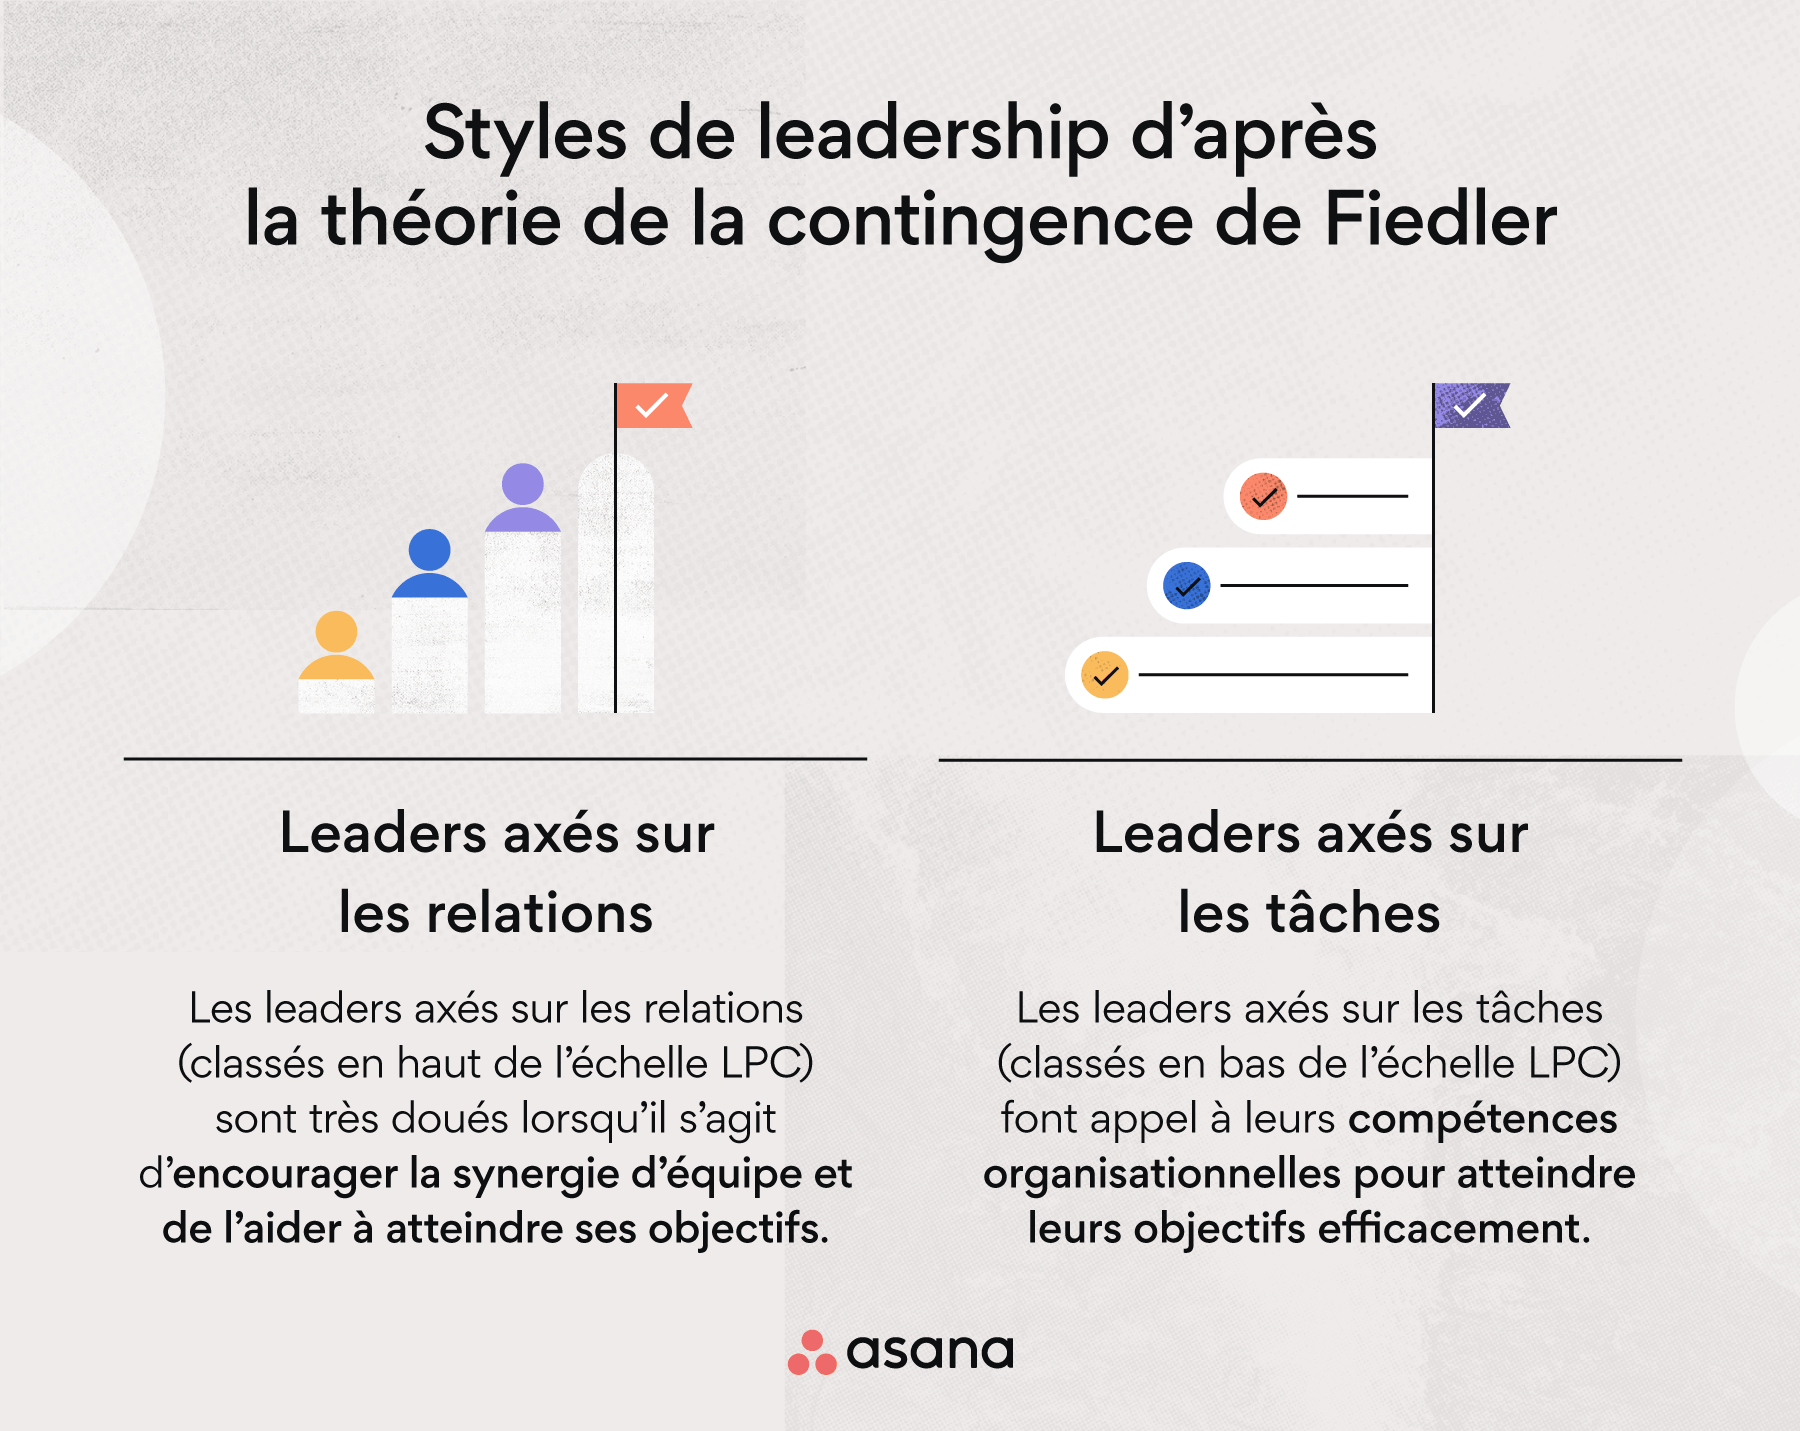 Styles de leadership d’après la théorie de la contingence de Fiedler